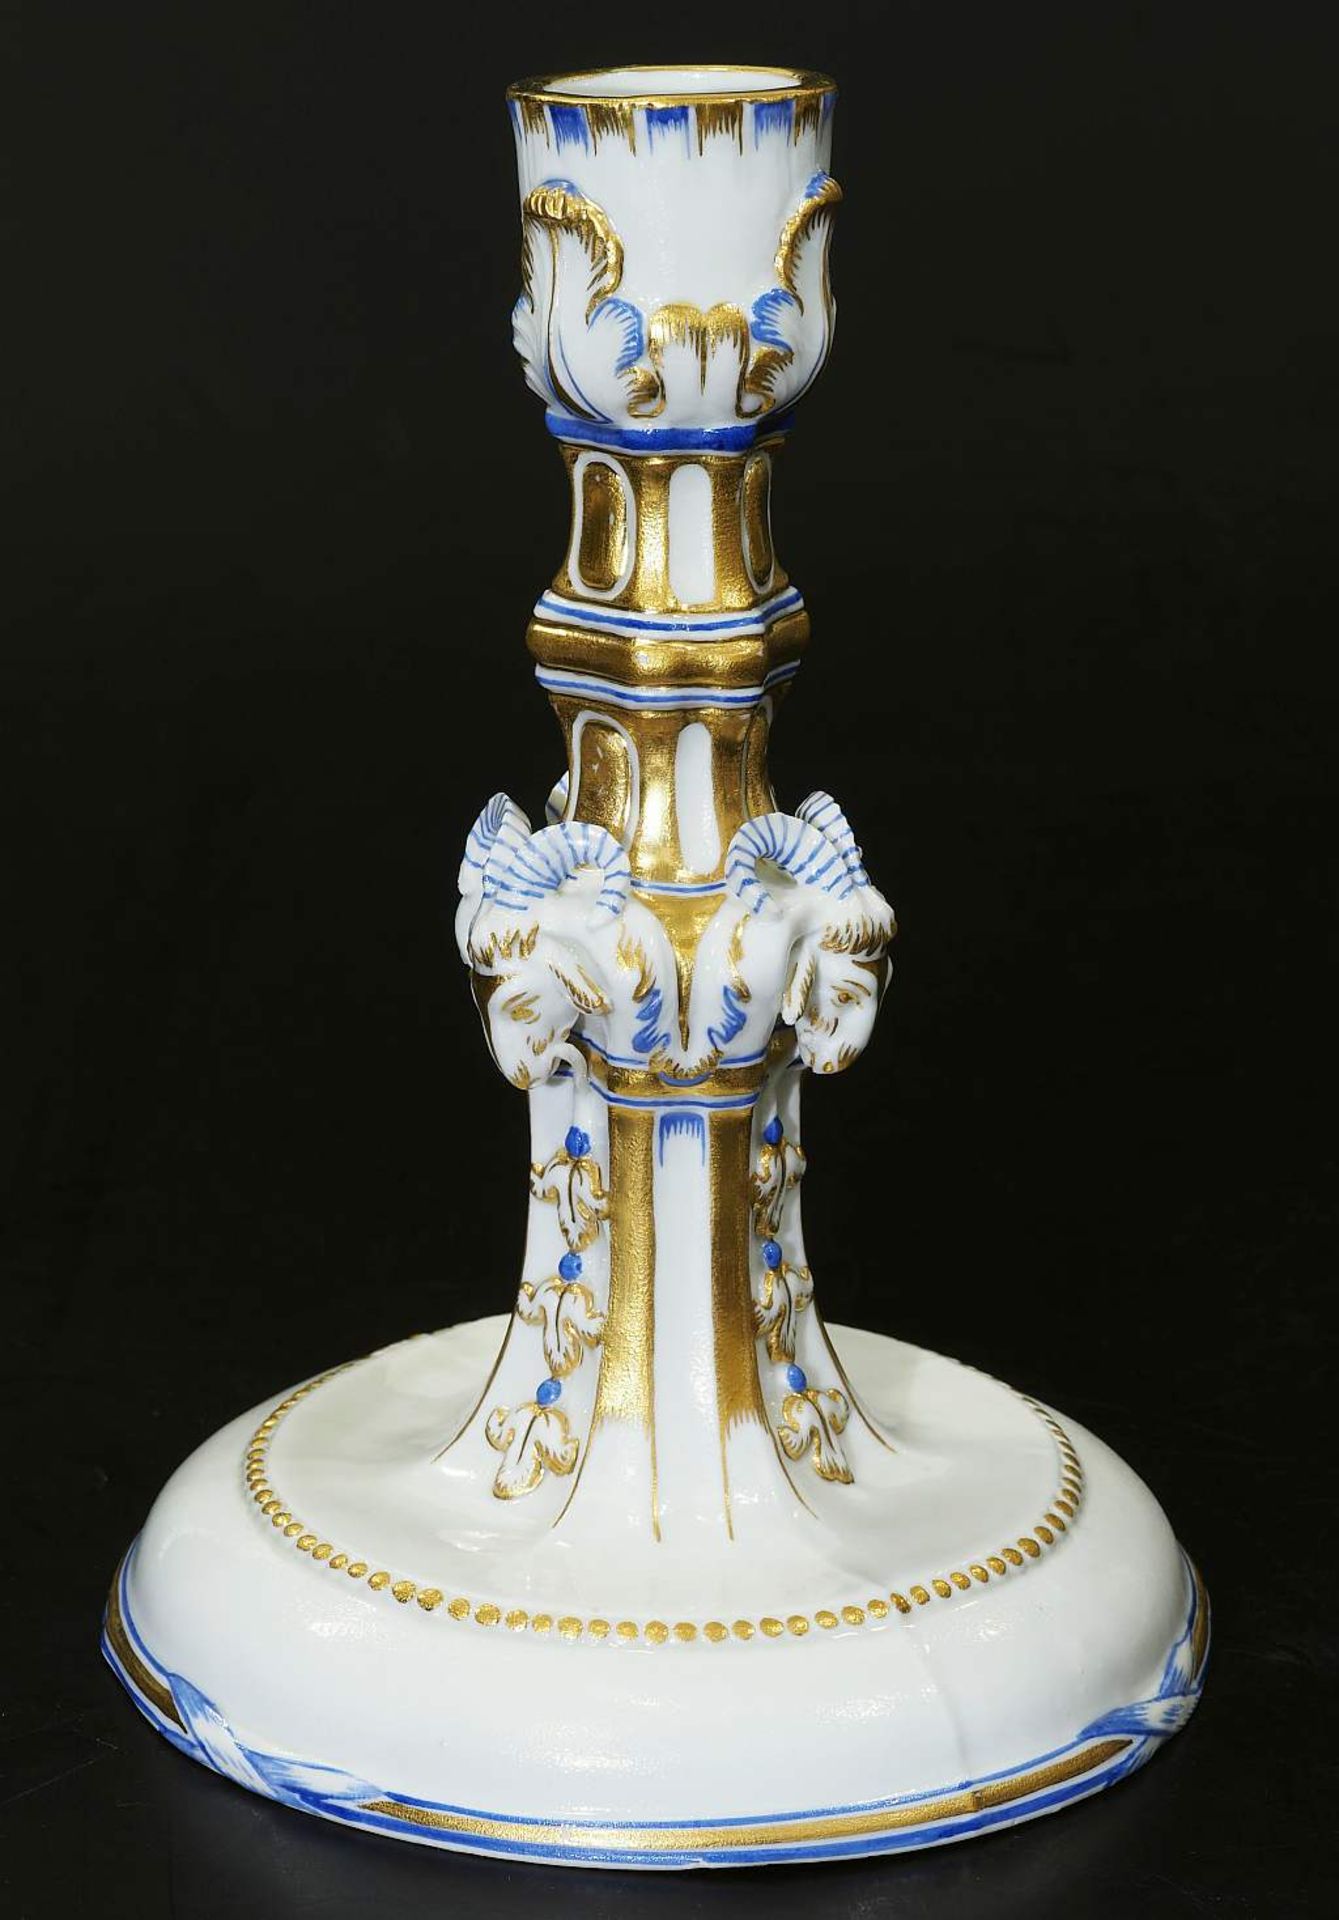 Kerzenleuchter, NYPMPENBURG 1790.Kerzenleuchter, NYPMPENBURG 1790. Modell von Dominik Auliczek. - Bild 3 aus 8